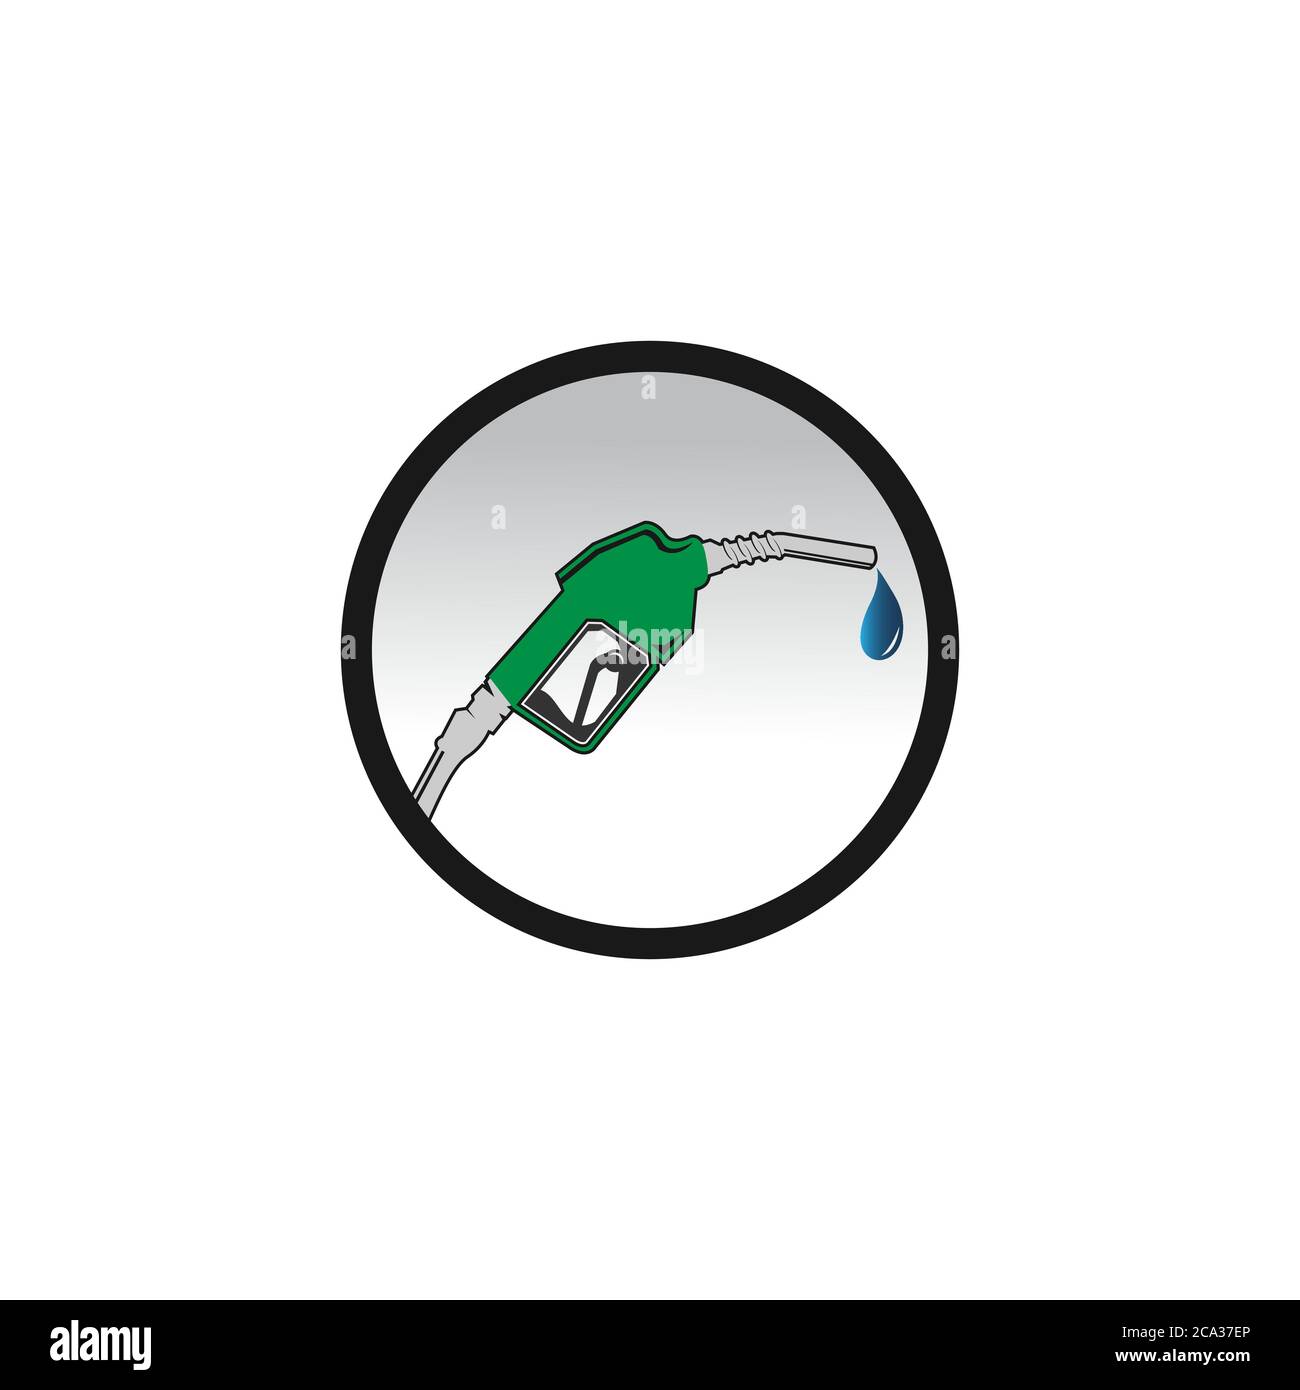 Illustrazione vettoriale dell'icona della stazione di servizio per la progettazione della benzina e lo sfondo dell'isolamento del nastro. Banner vettoriale della stazione di servizio. Illustrazione Vettoriale